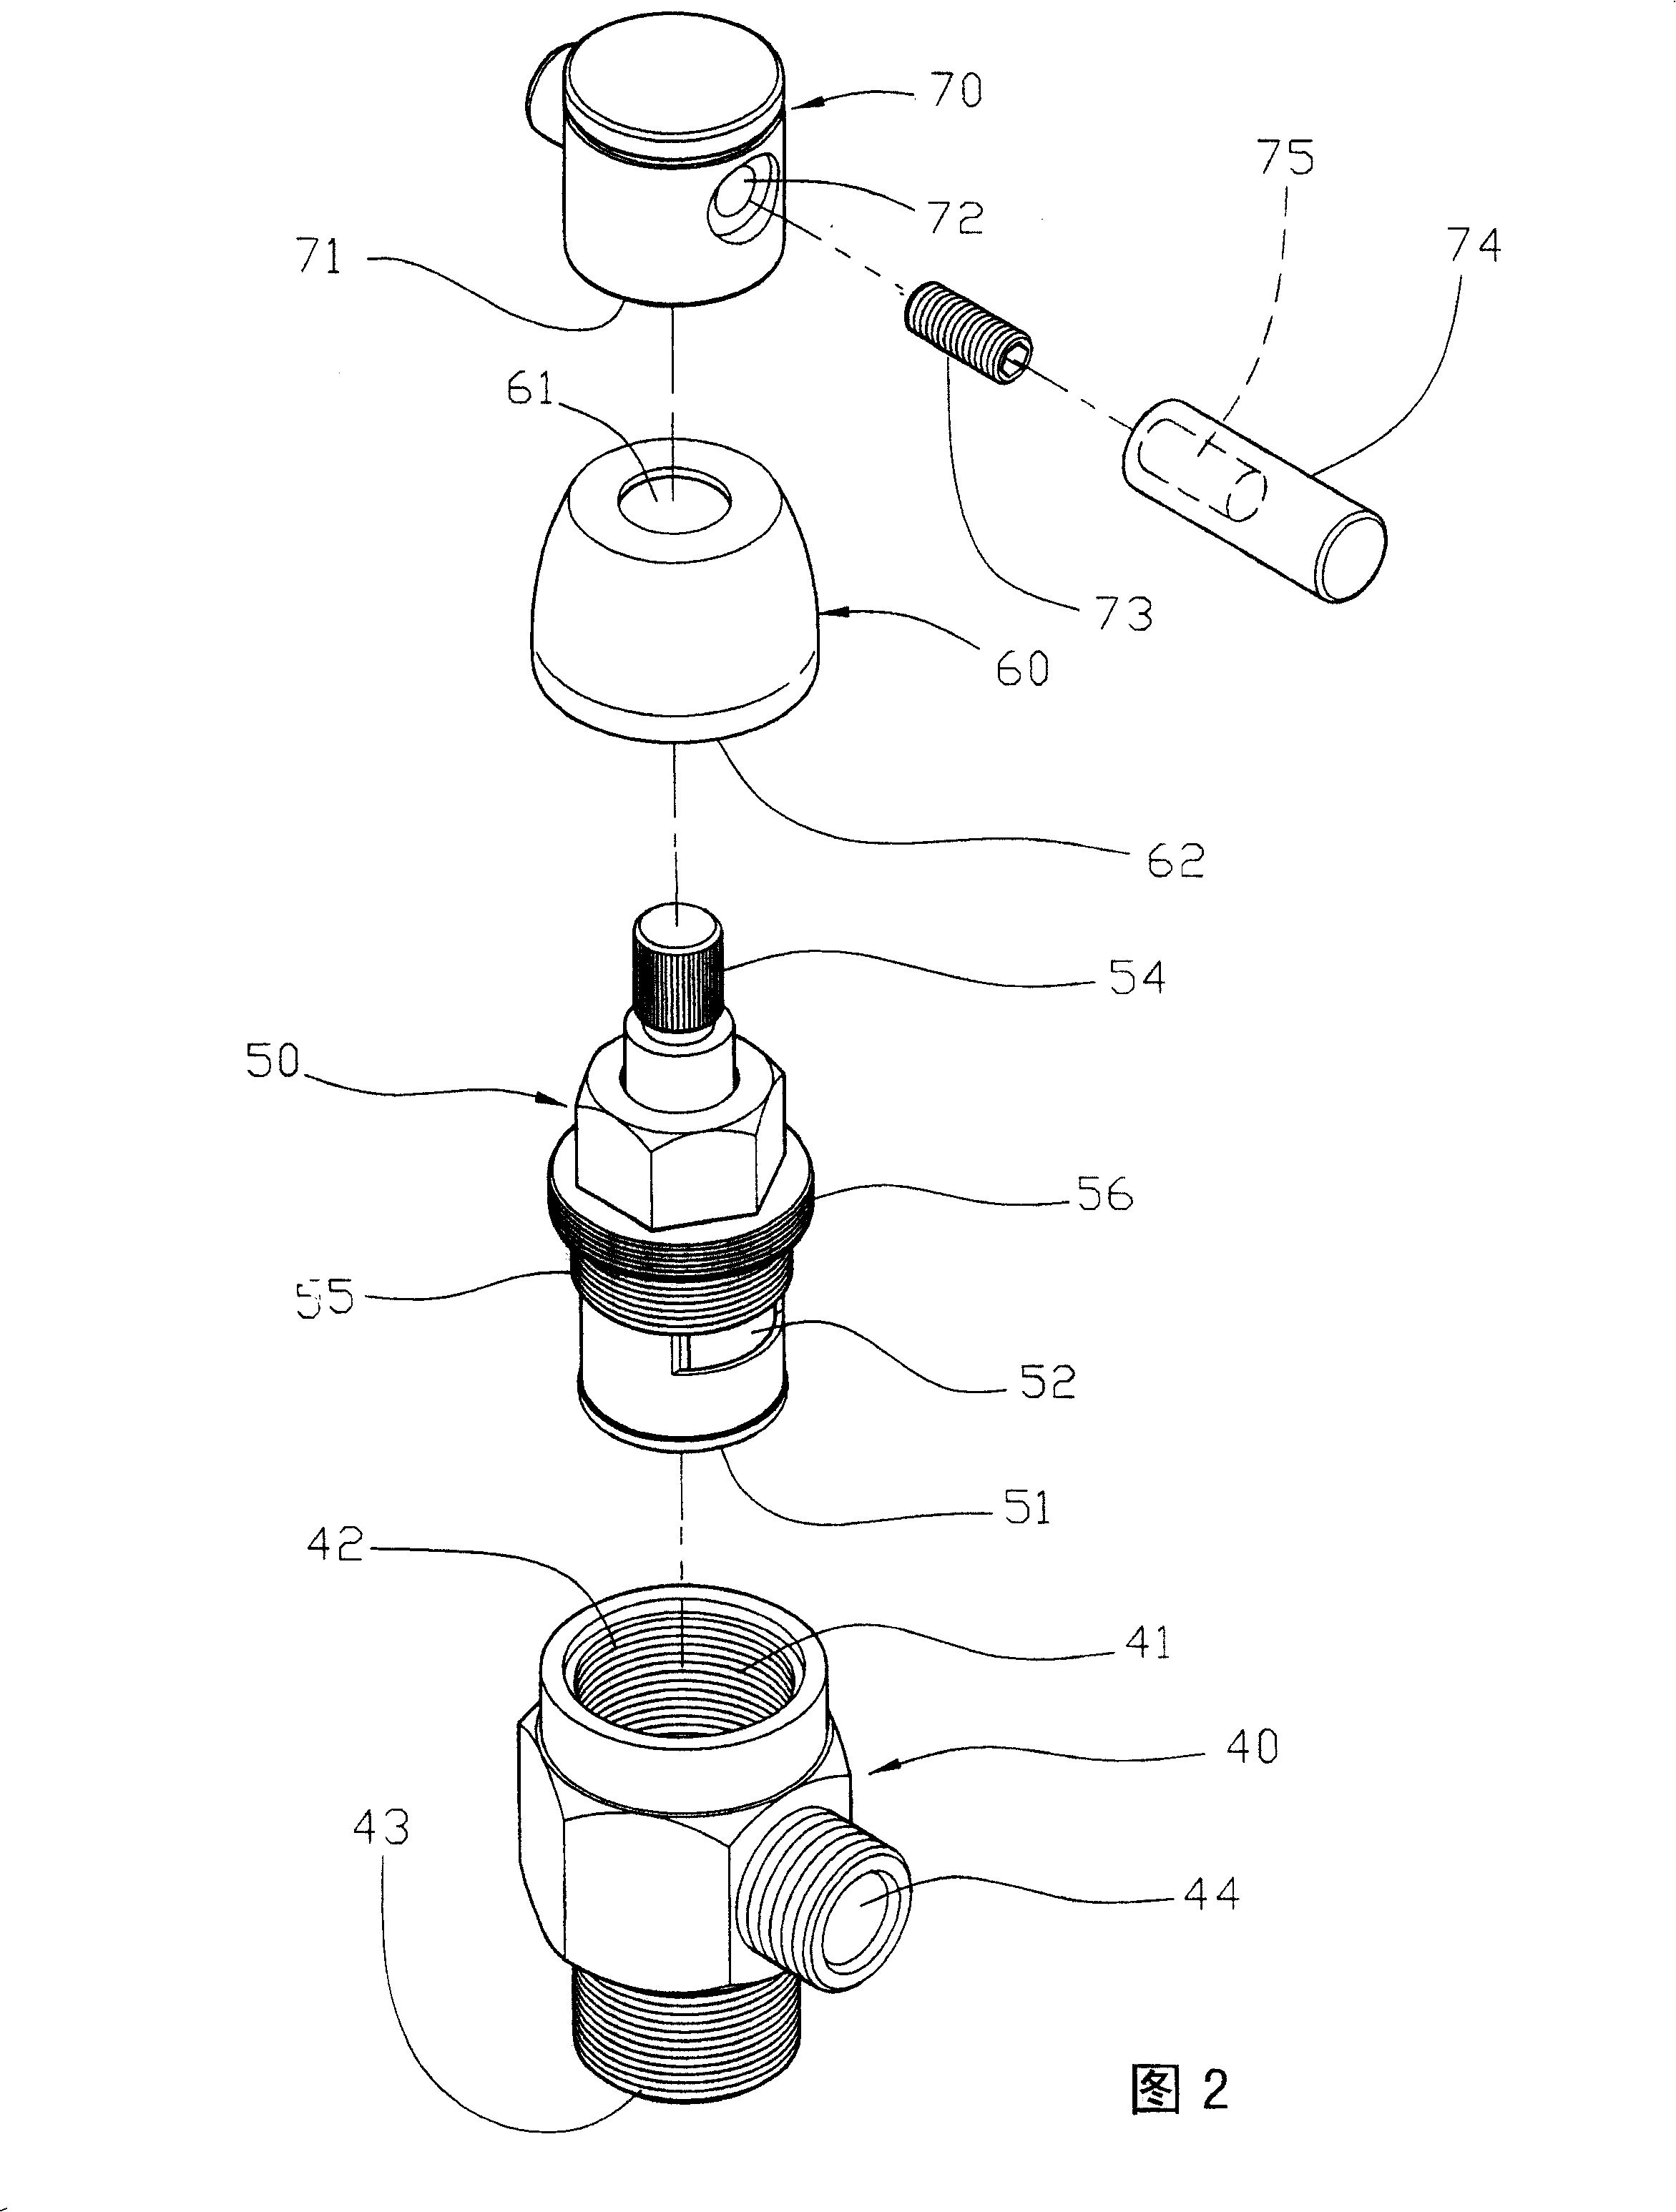 Switching valve